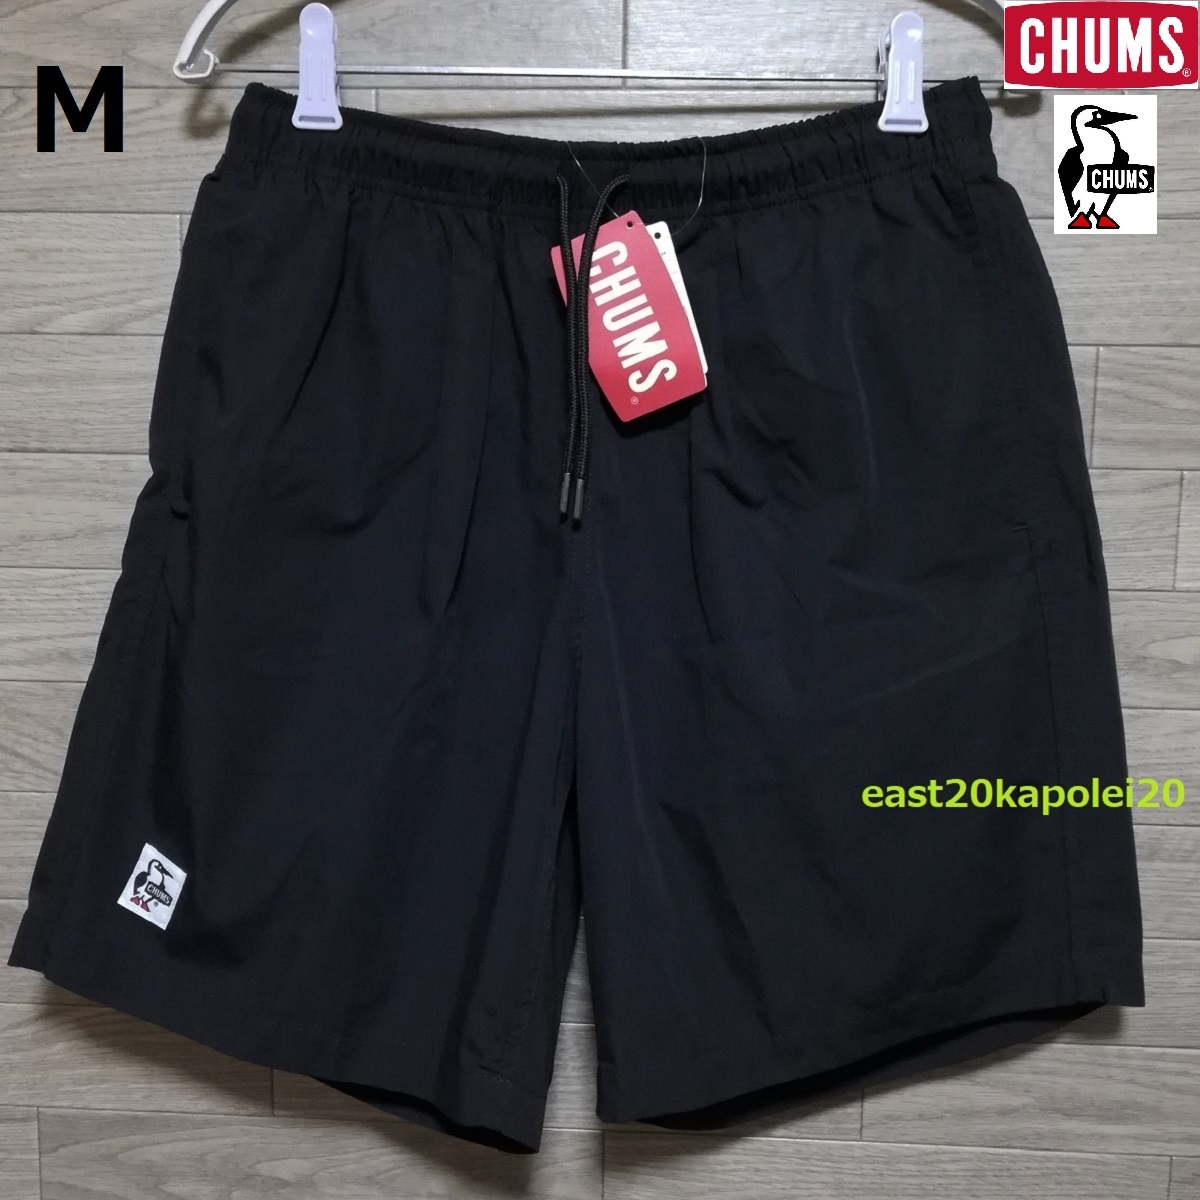  новый товар CHUMS Chums Plunge Divers план ji Divers мужской одежда низ шорты шорты M чёрный черный не использовался CH03-1296